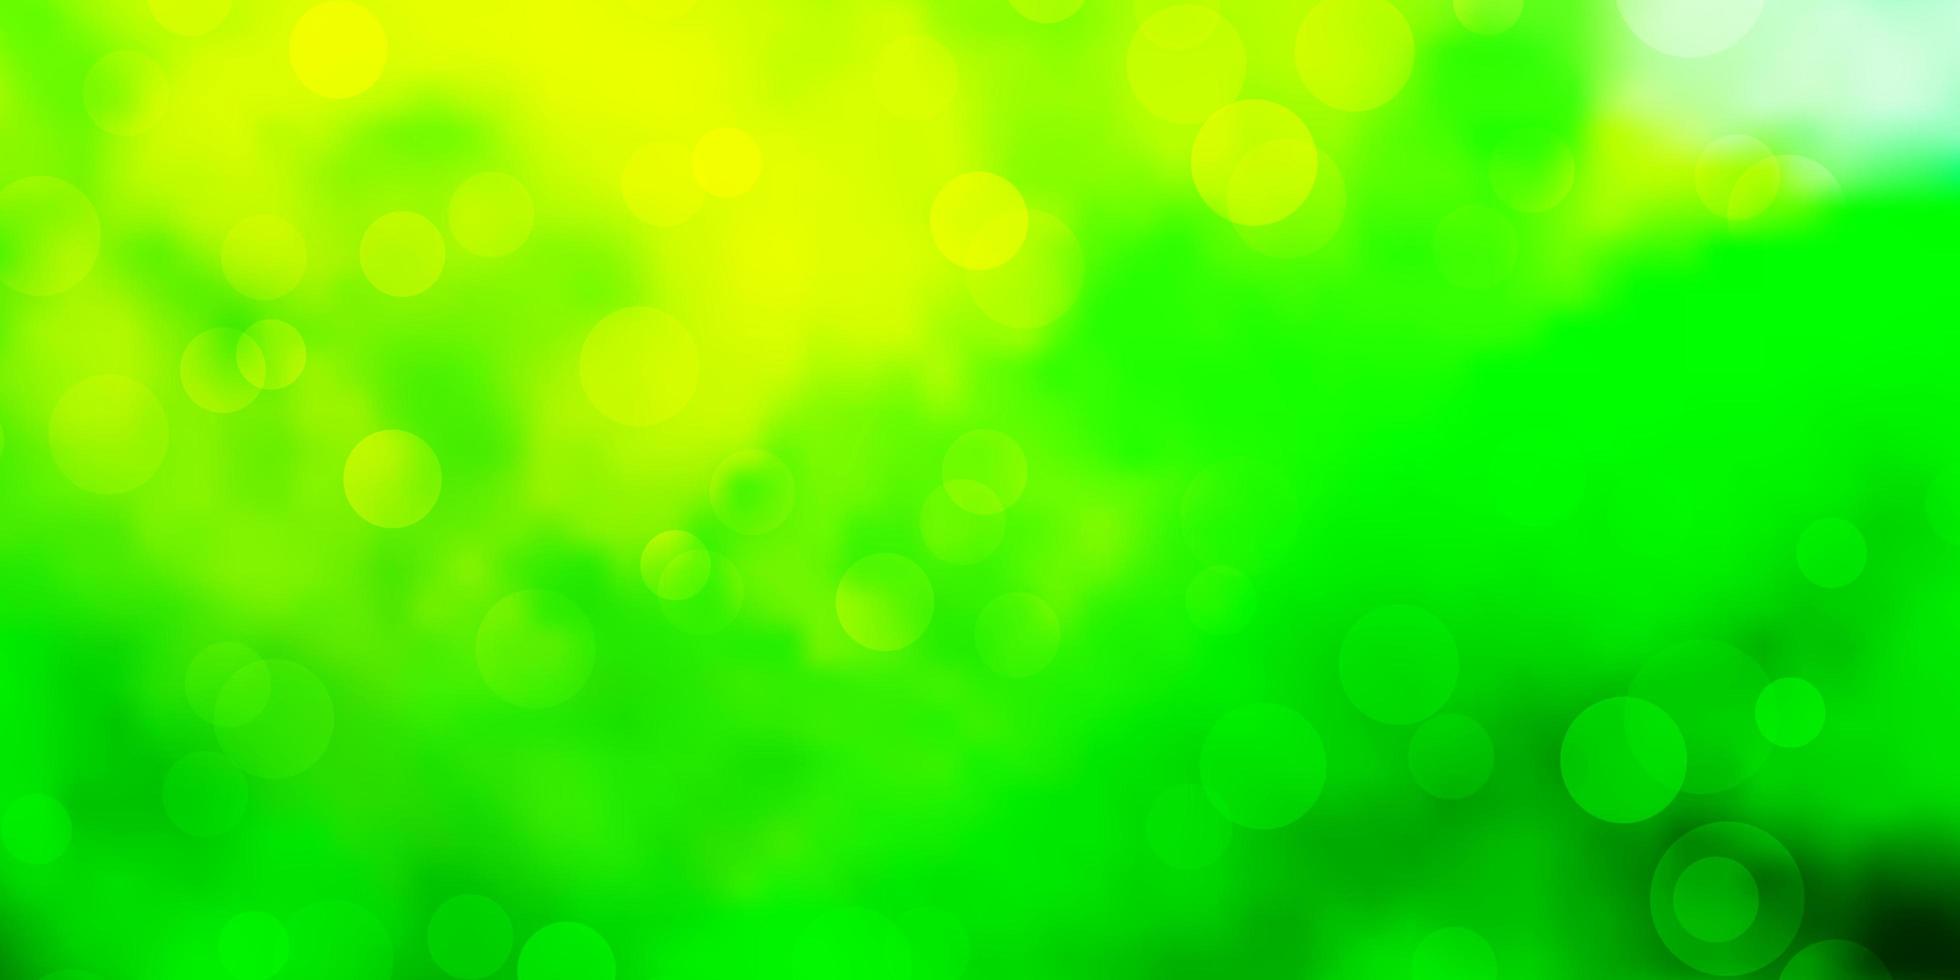 textura de vetor verde e amarelo claro com círculos. glitter ilustração abstrata com gotas coloridas. design para cartazes, banners.